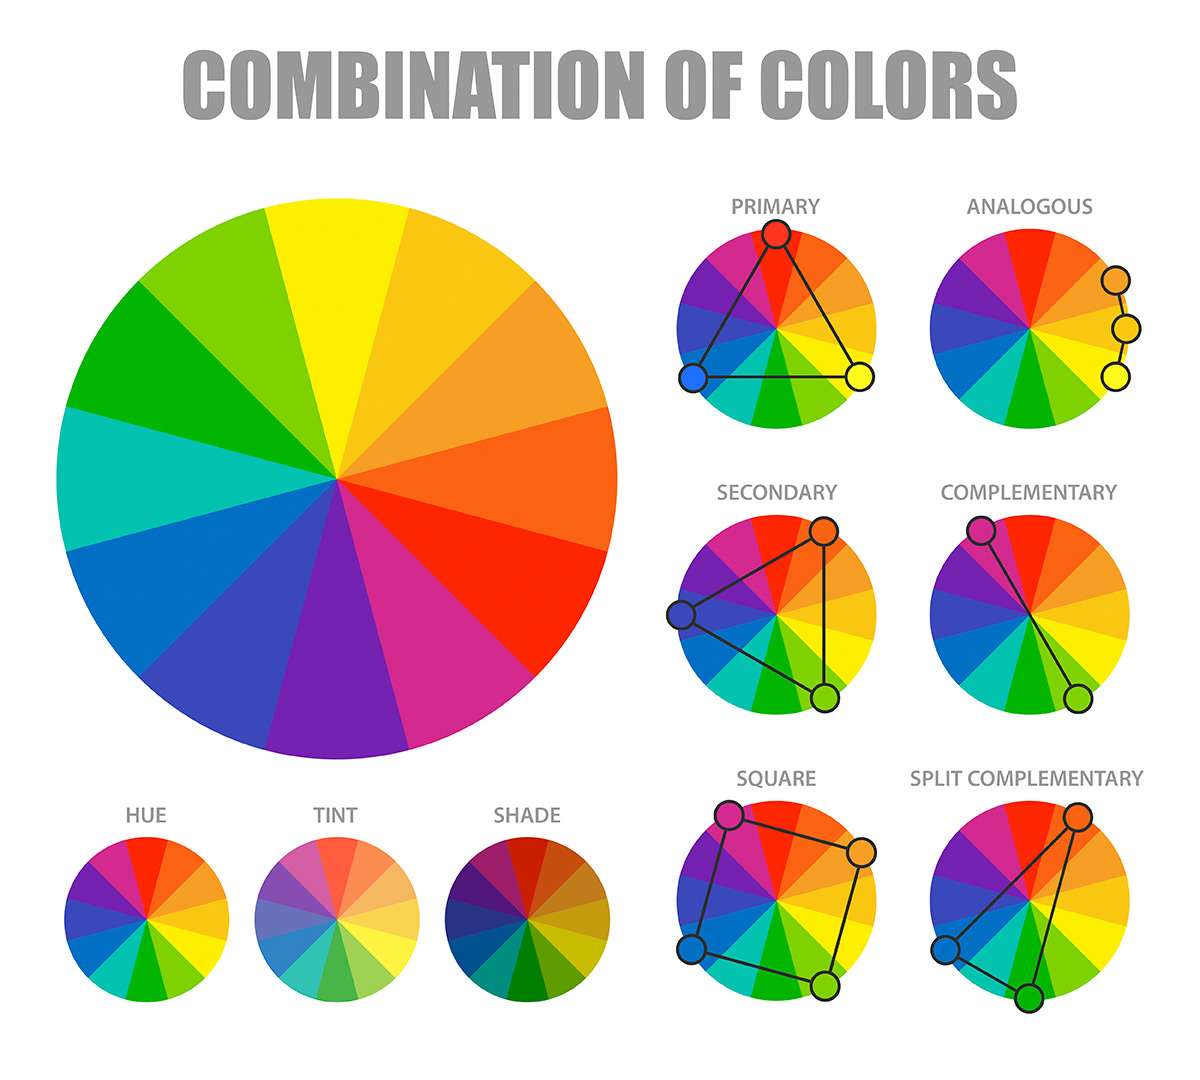 Qué es el círculo cromático y cómo combinar los colores?